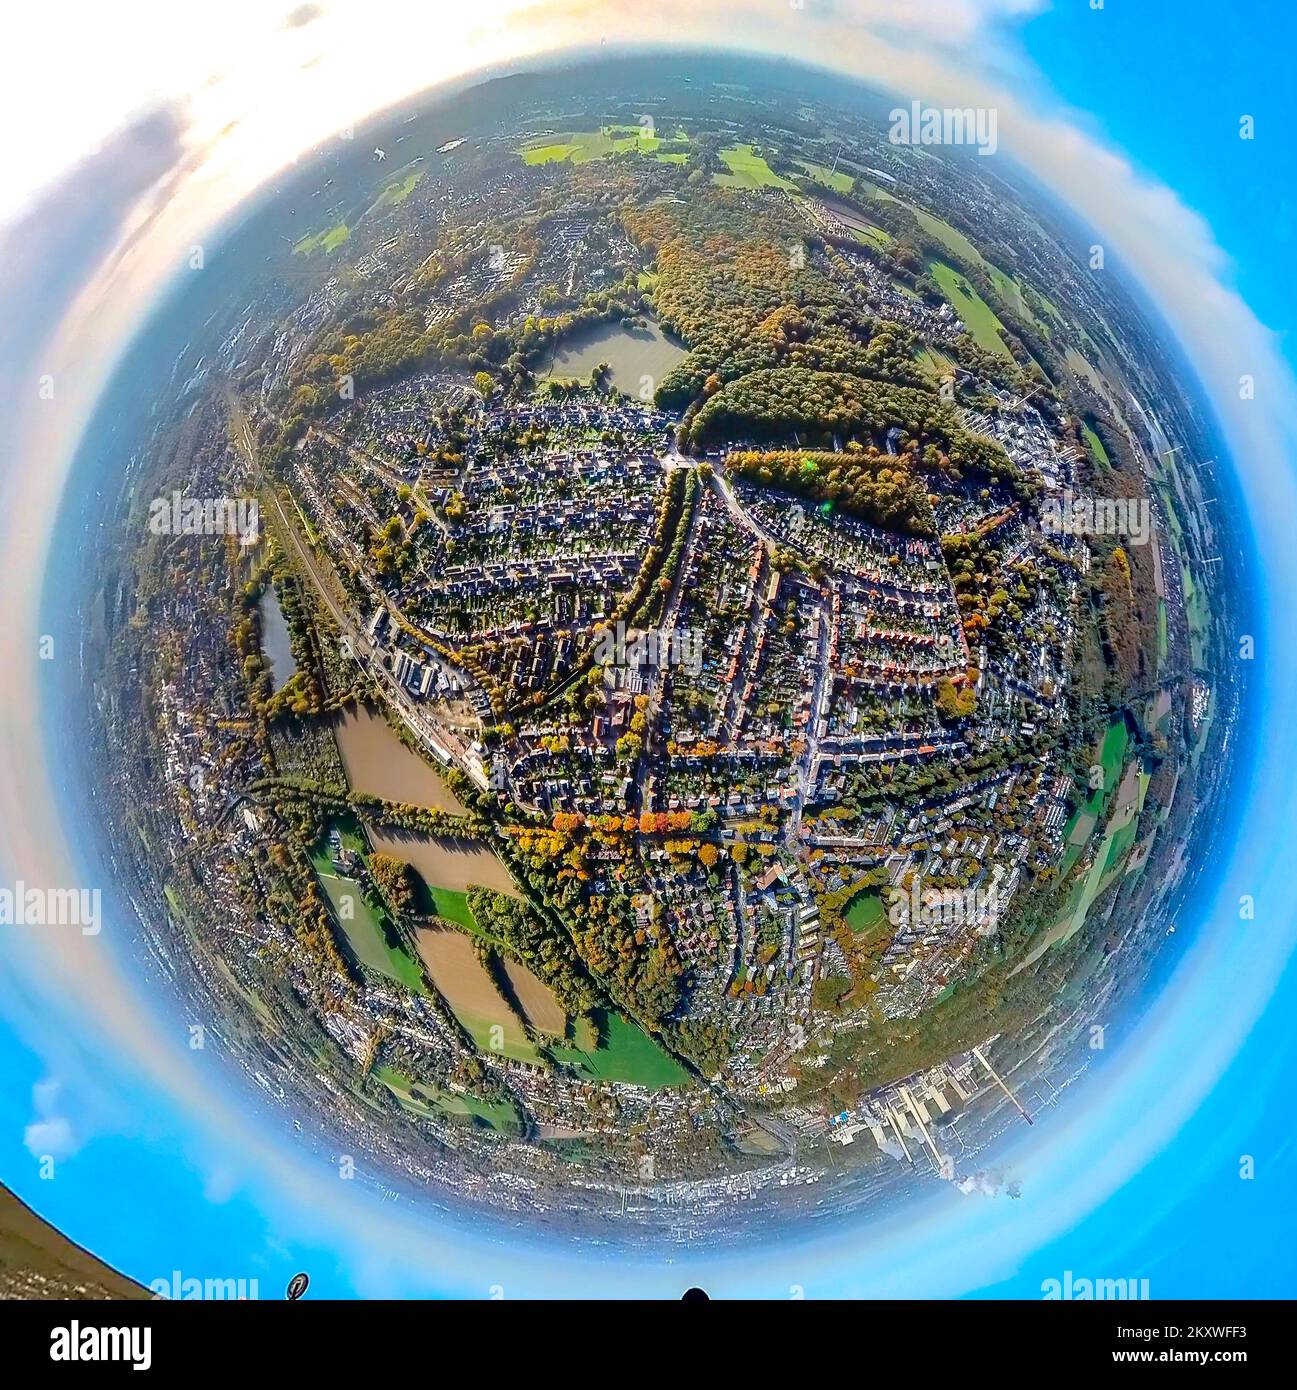 Veduta aerea, vista panoramica Zweckel, scatto fisheye, fotografia fisheye, fotografia a 360 gradi, Zweckel, Gladbeck, zona della Ruhr, Renania settentrionale-Vestfalia, Ger Foto Stock